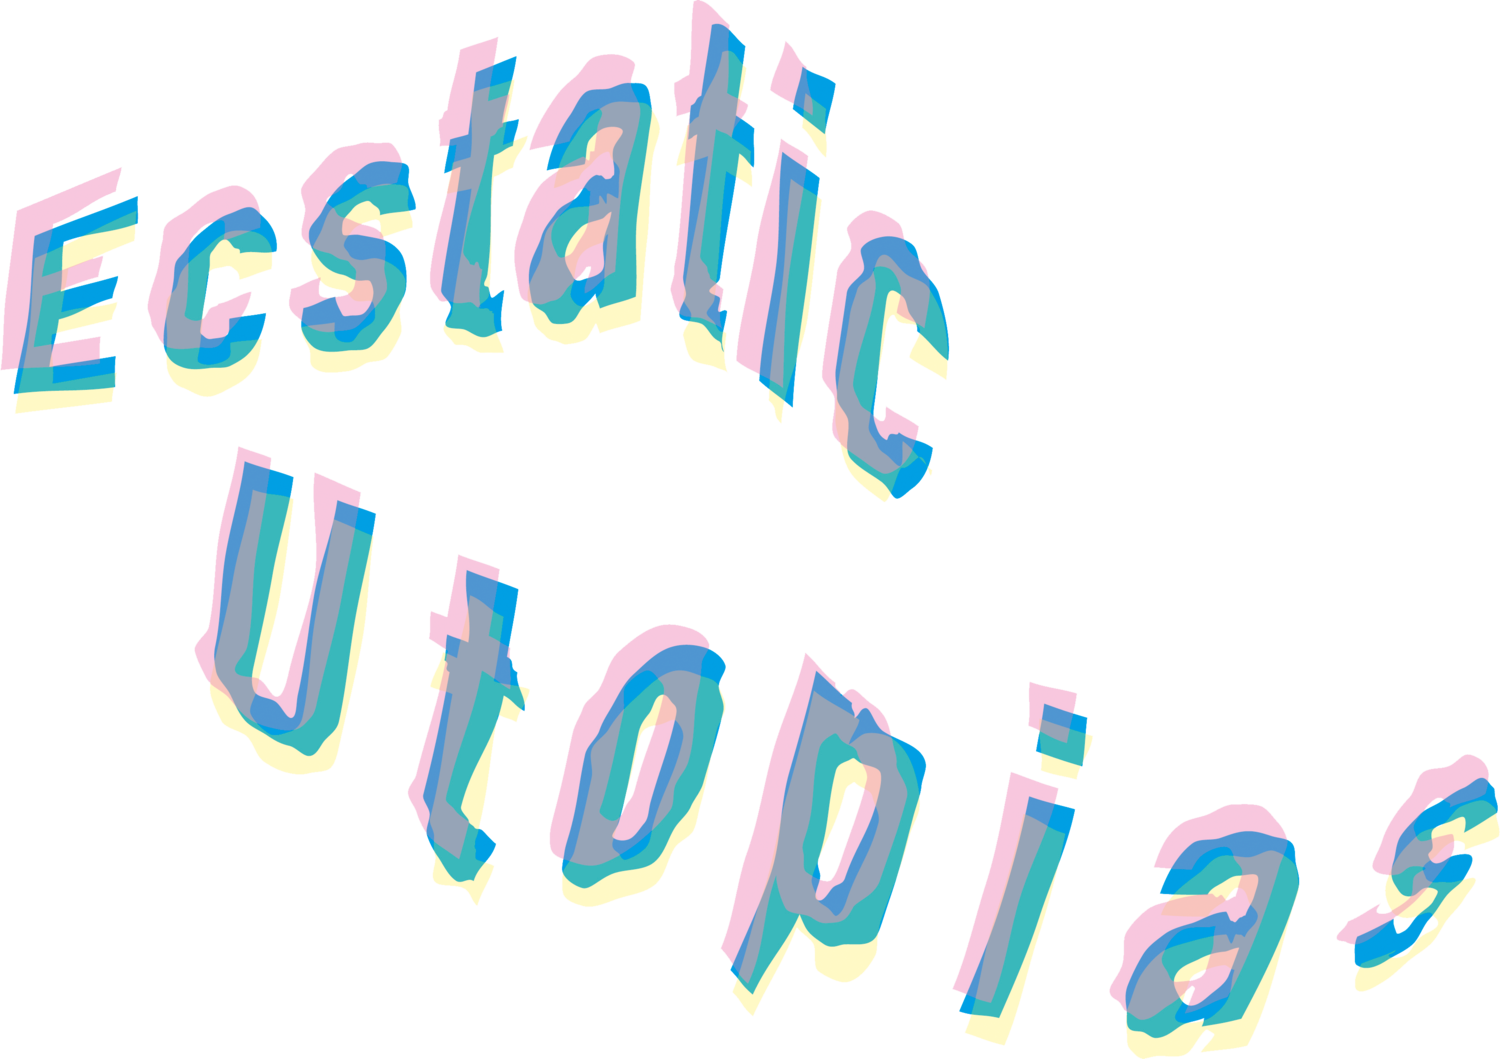 Ecstatic Utopias